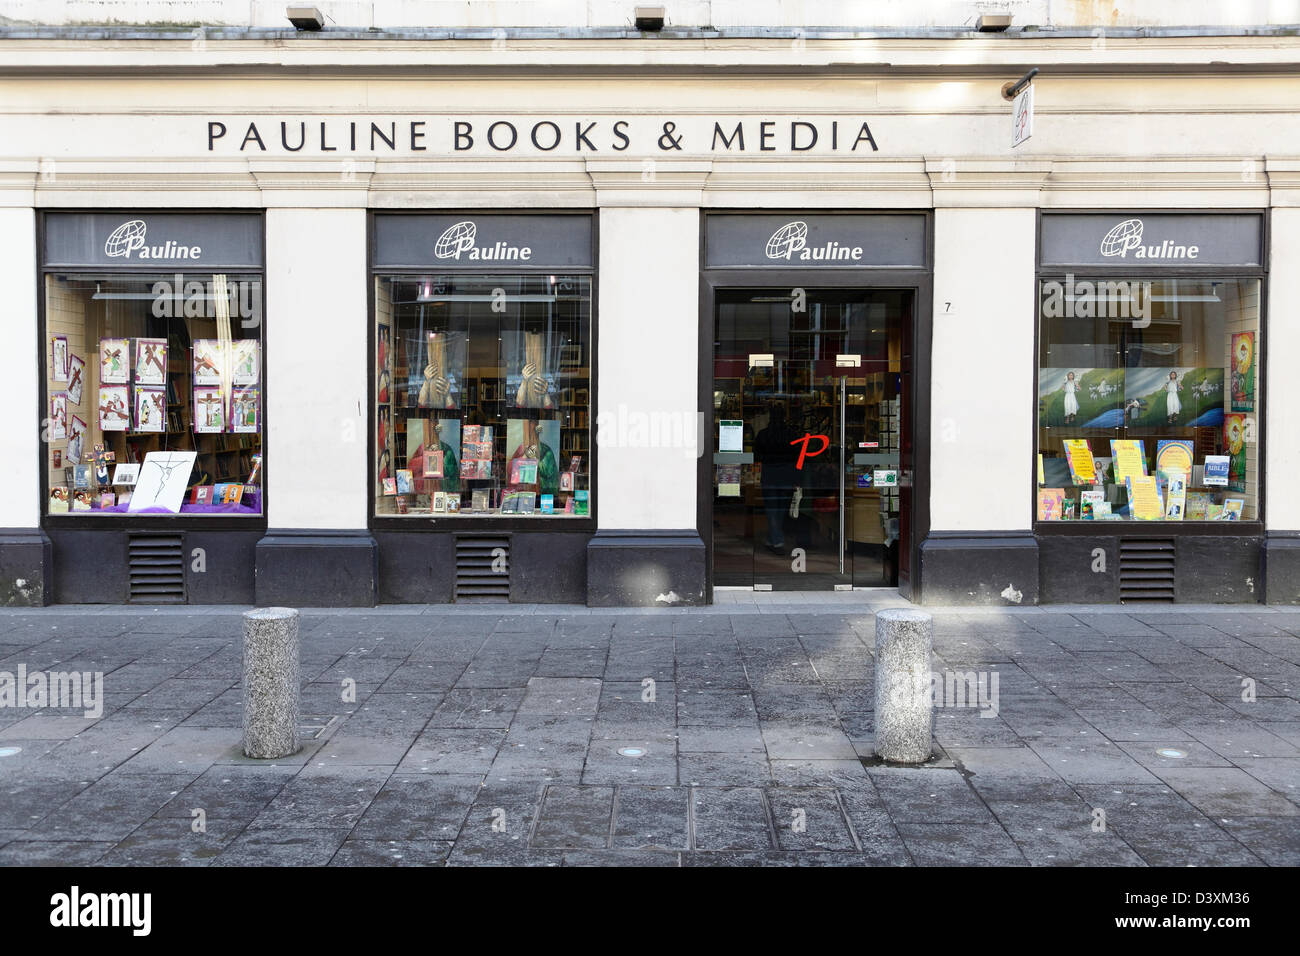 Ce magasin est fermé en permanence, voir Alamy ID 2FK8X93 pour le nouveau magasin. Pauline Books and Media Shop sur Royal Exchange Square, Glasgow, Écosse, Royaume-Uni Banque D'Images